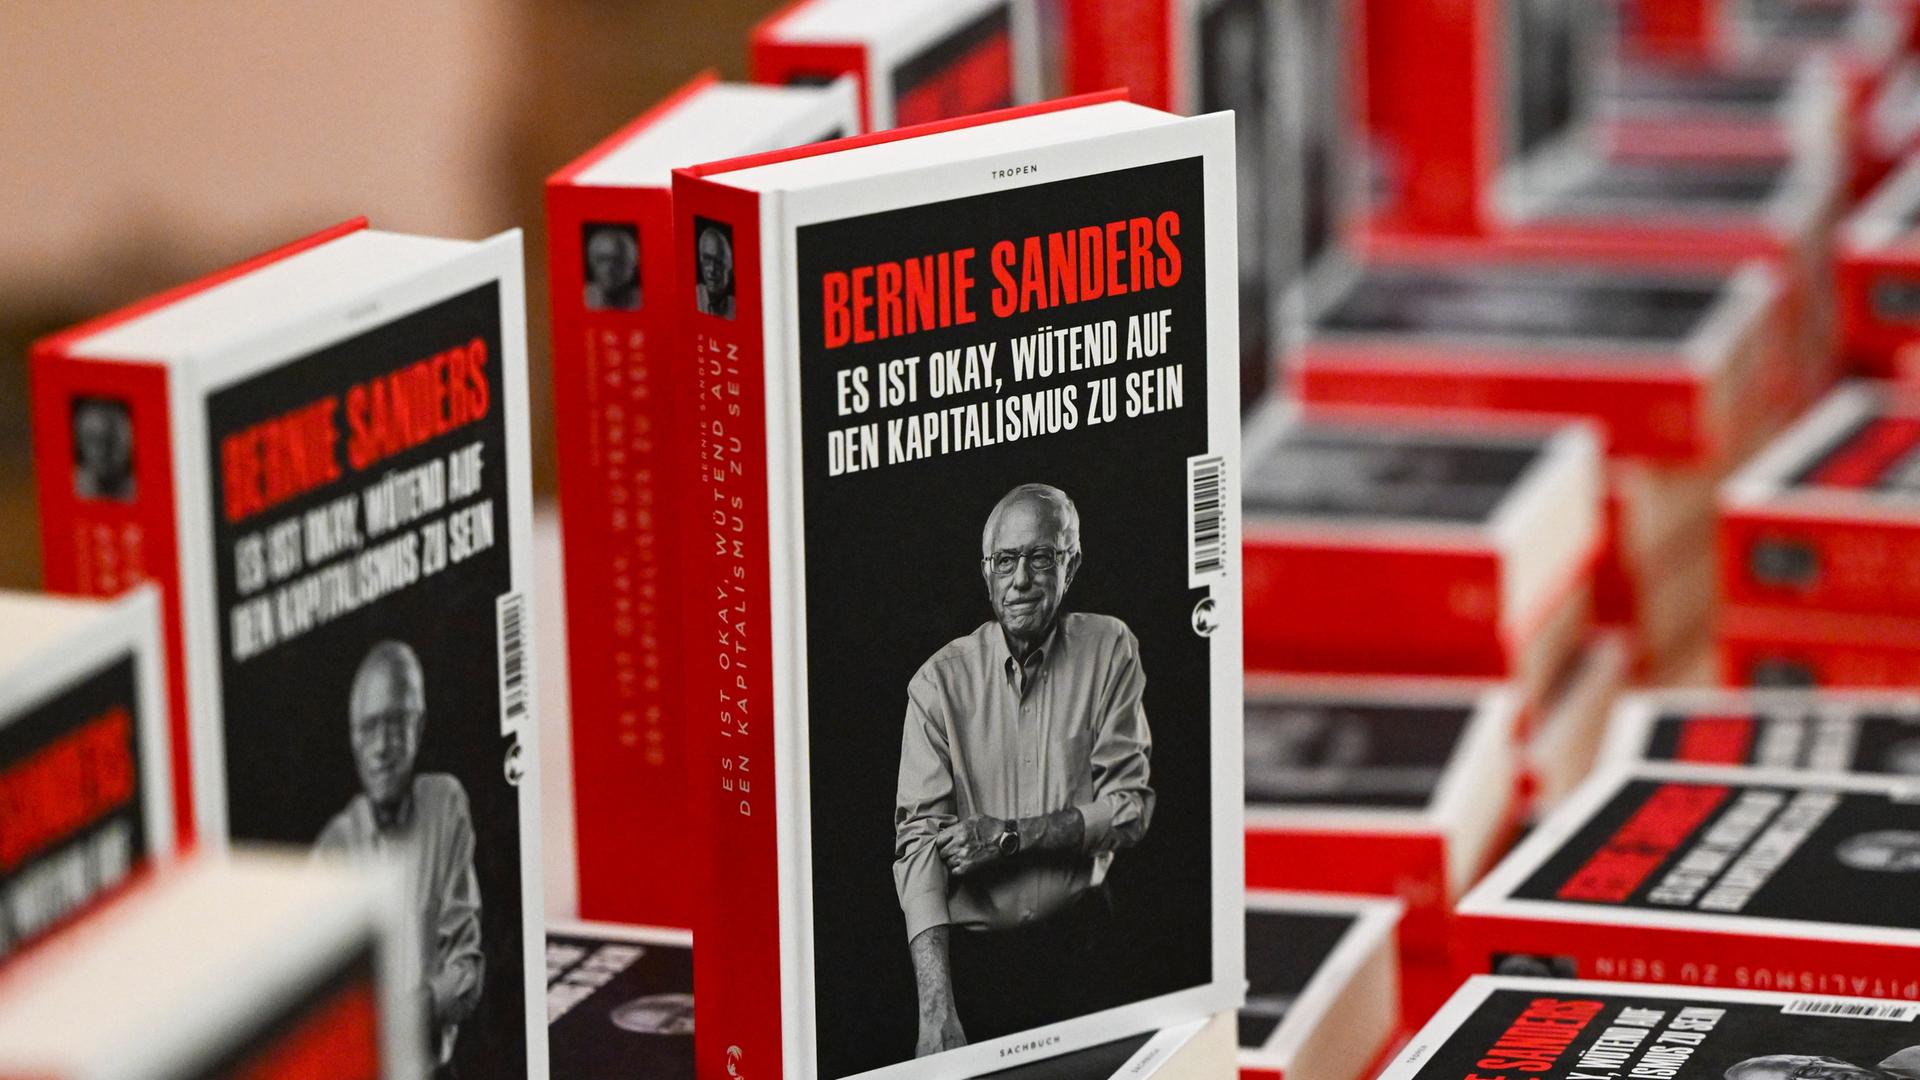 Bücher mit dem Titel "Es ist okay, wütend auf den Kapitalismus zu sein" des US-amerikanischen Politikers Bernie Sanders bei der Vorstellung im Haus der Kulturen der Welt in Berlin.